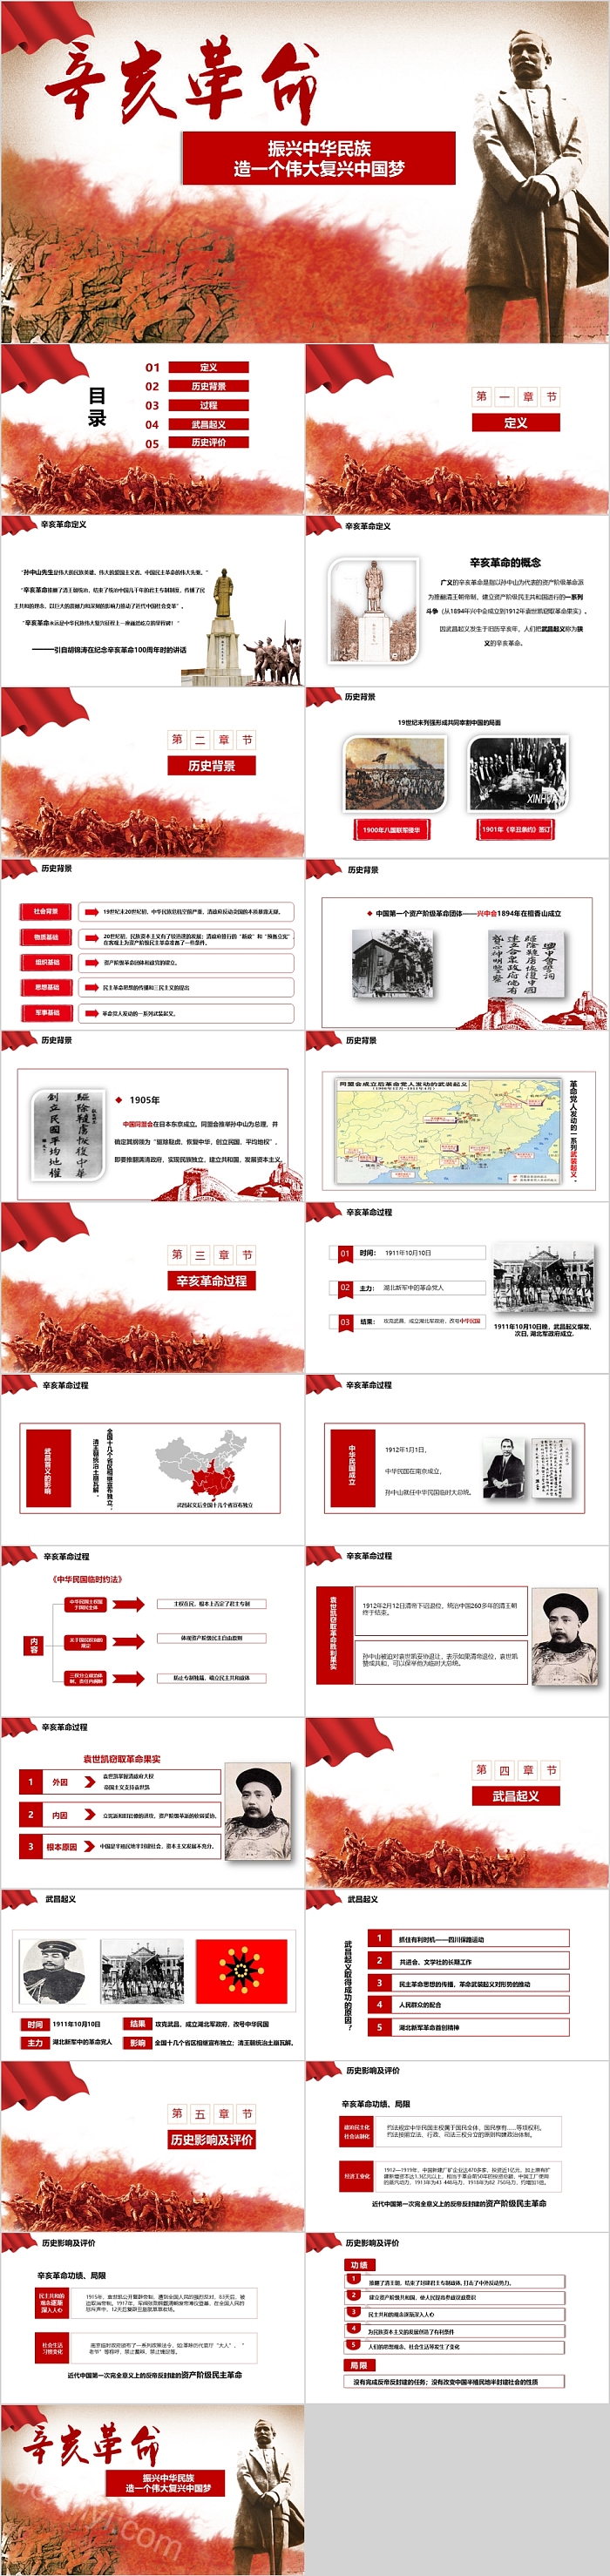 辛亥革命振兴中华民族造一个伟大复兴中国梦